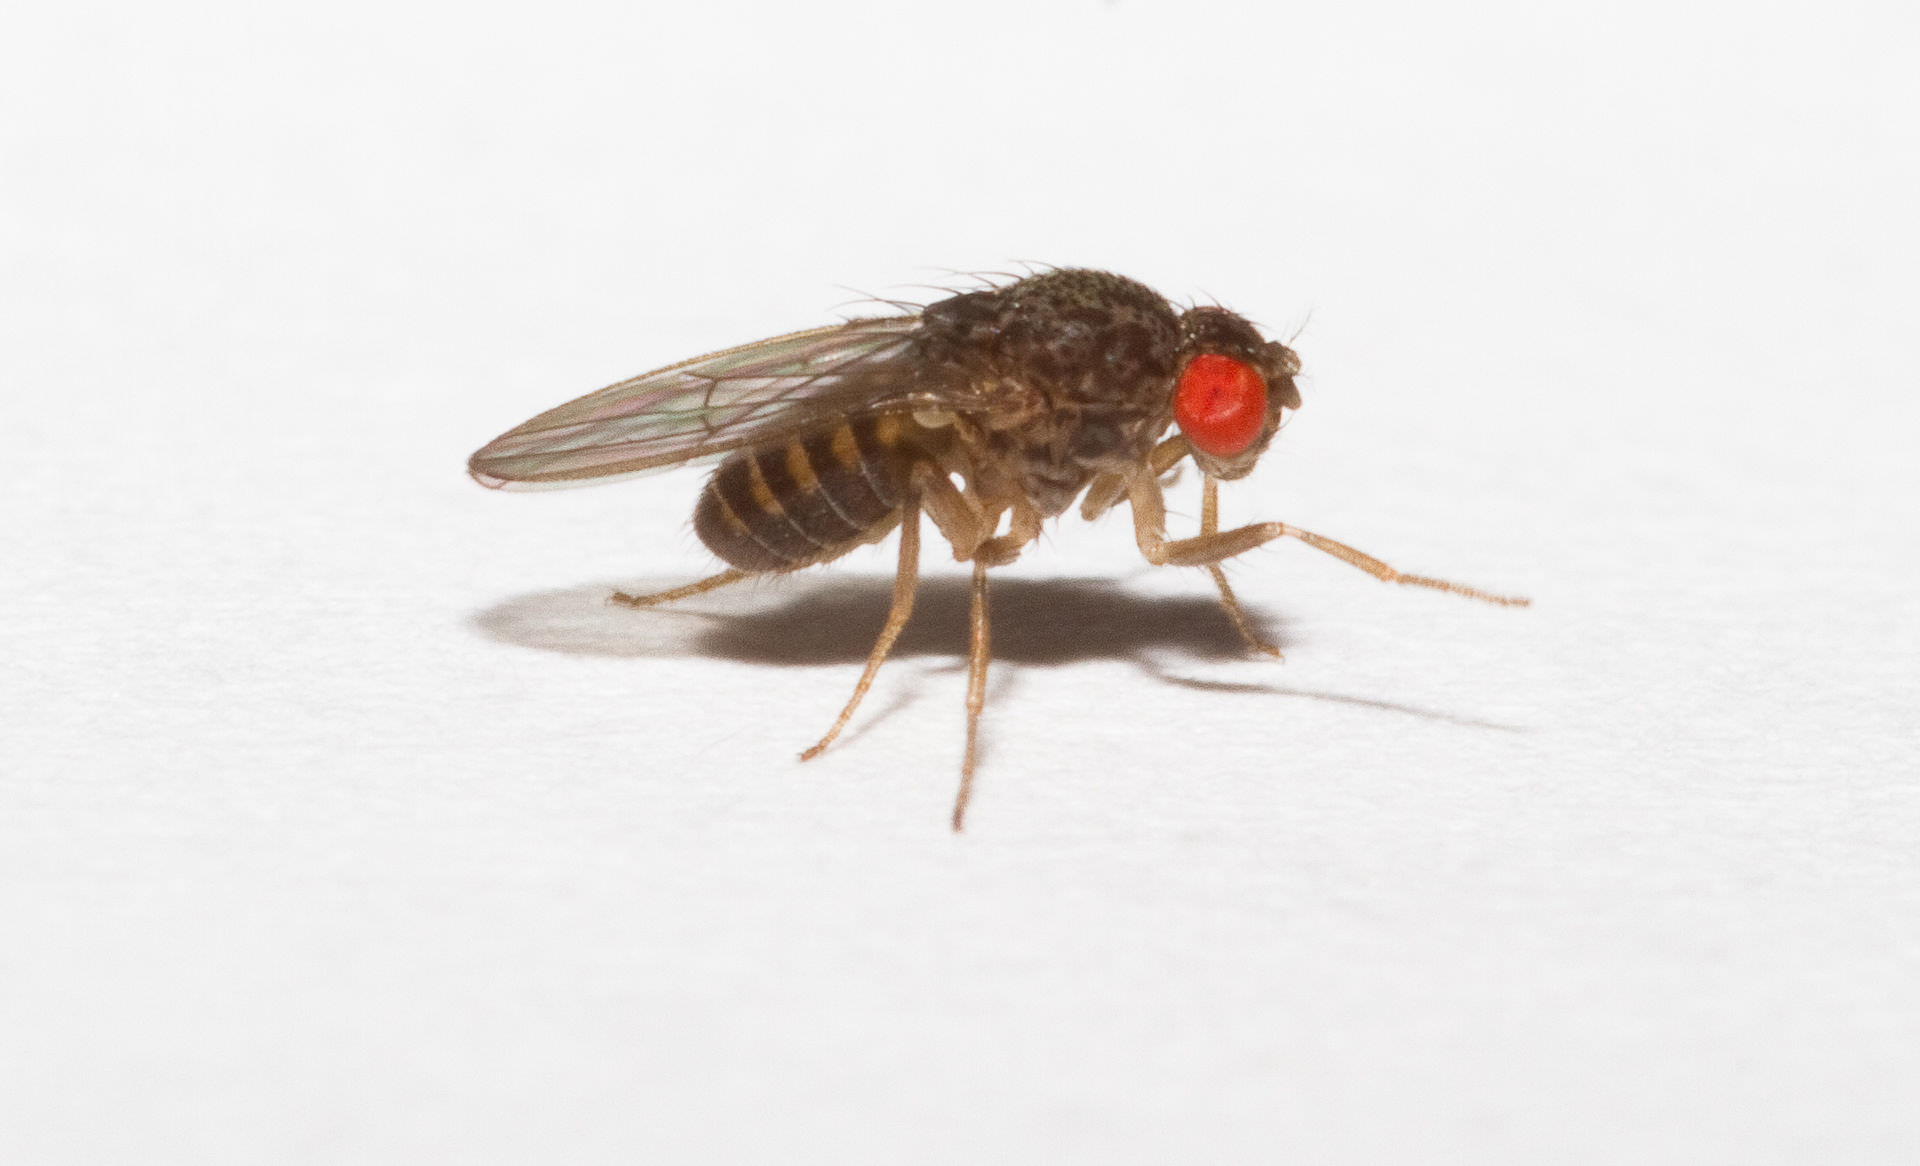 Drosophila gross